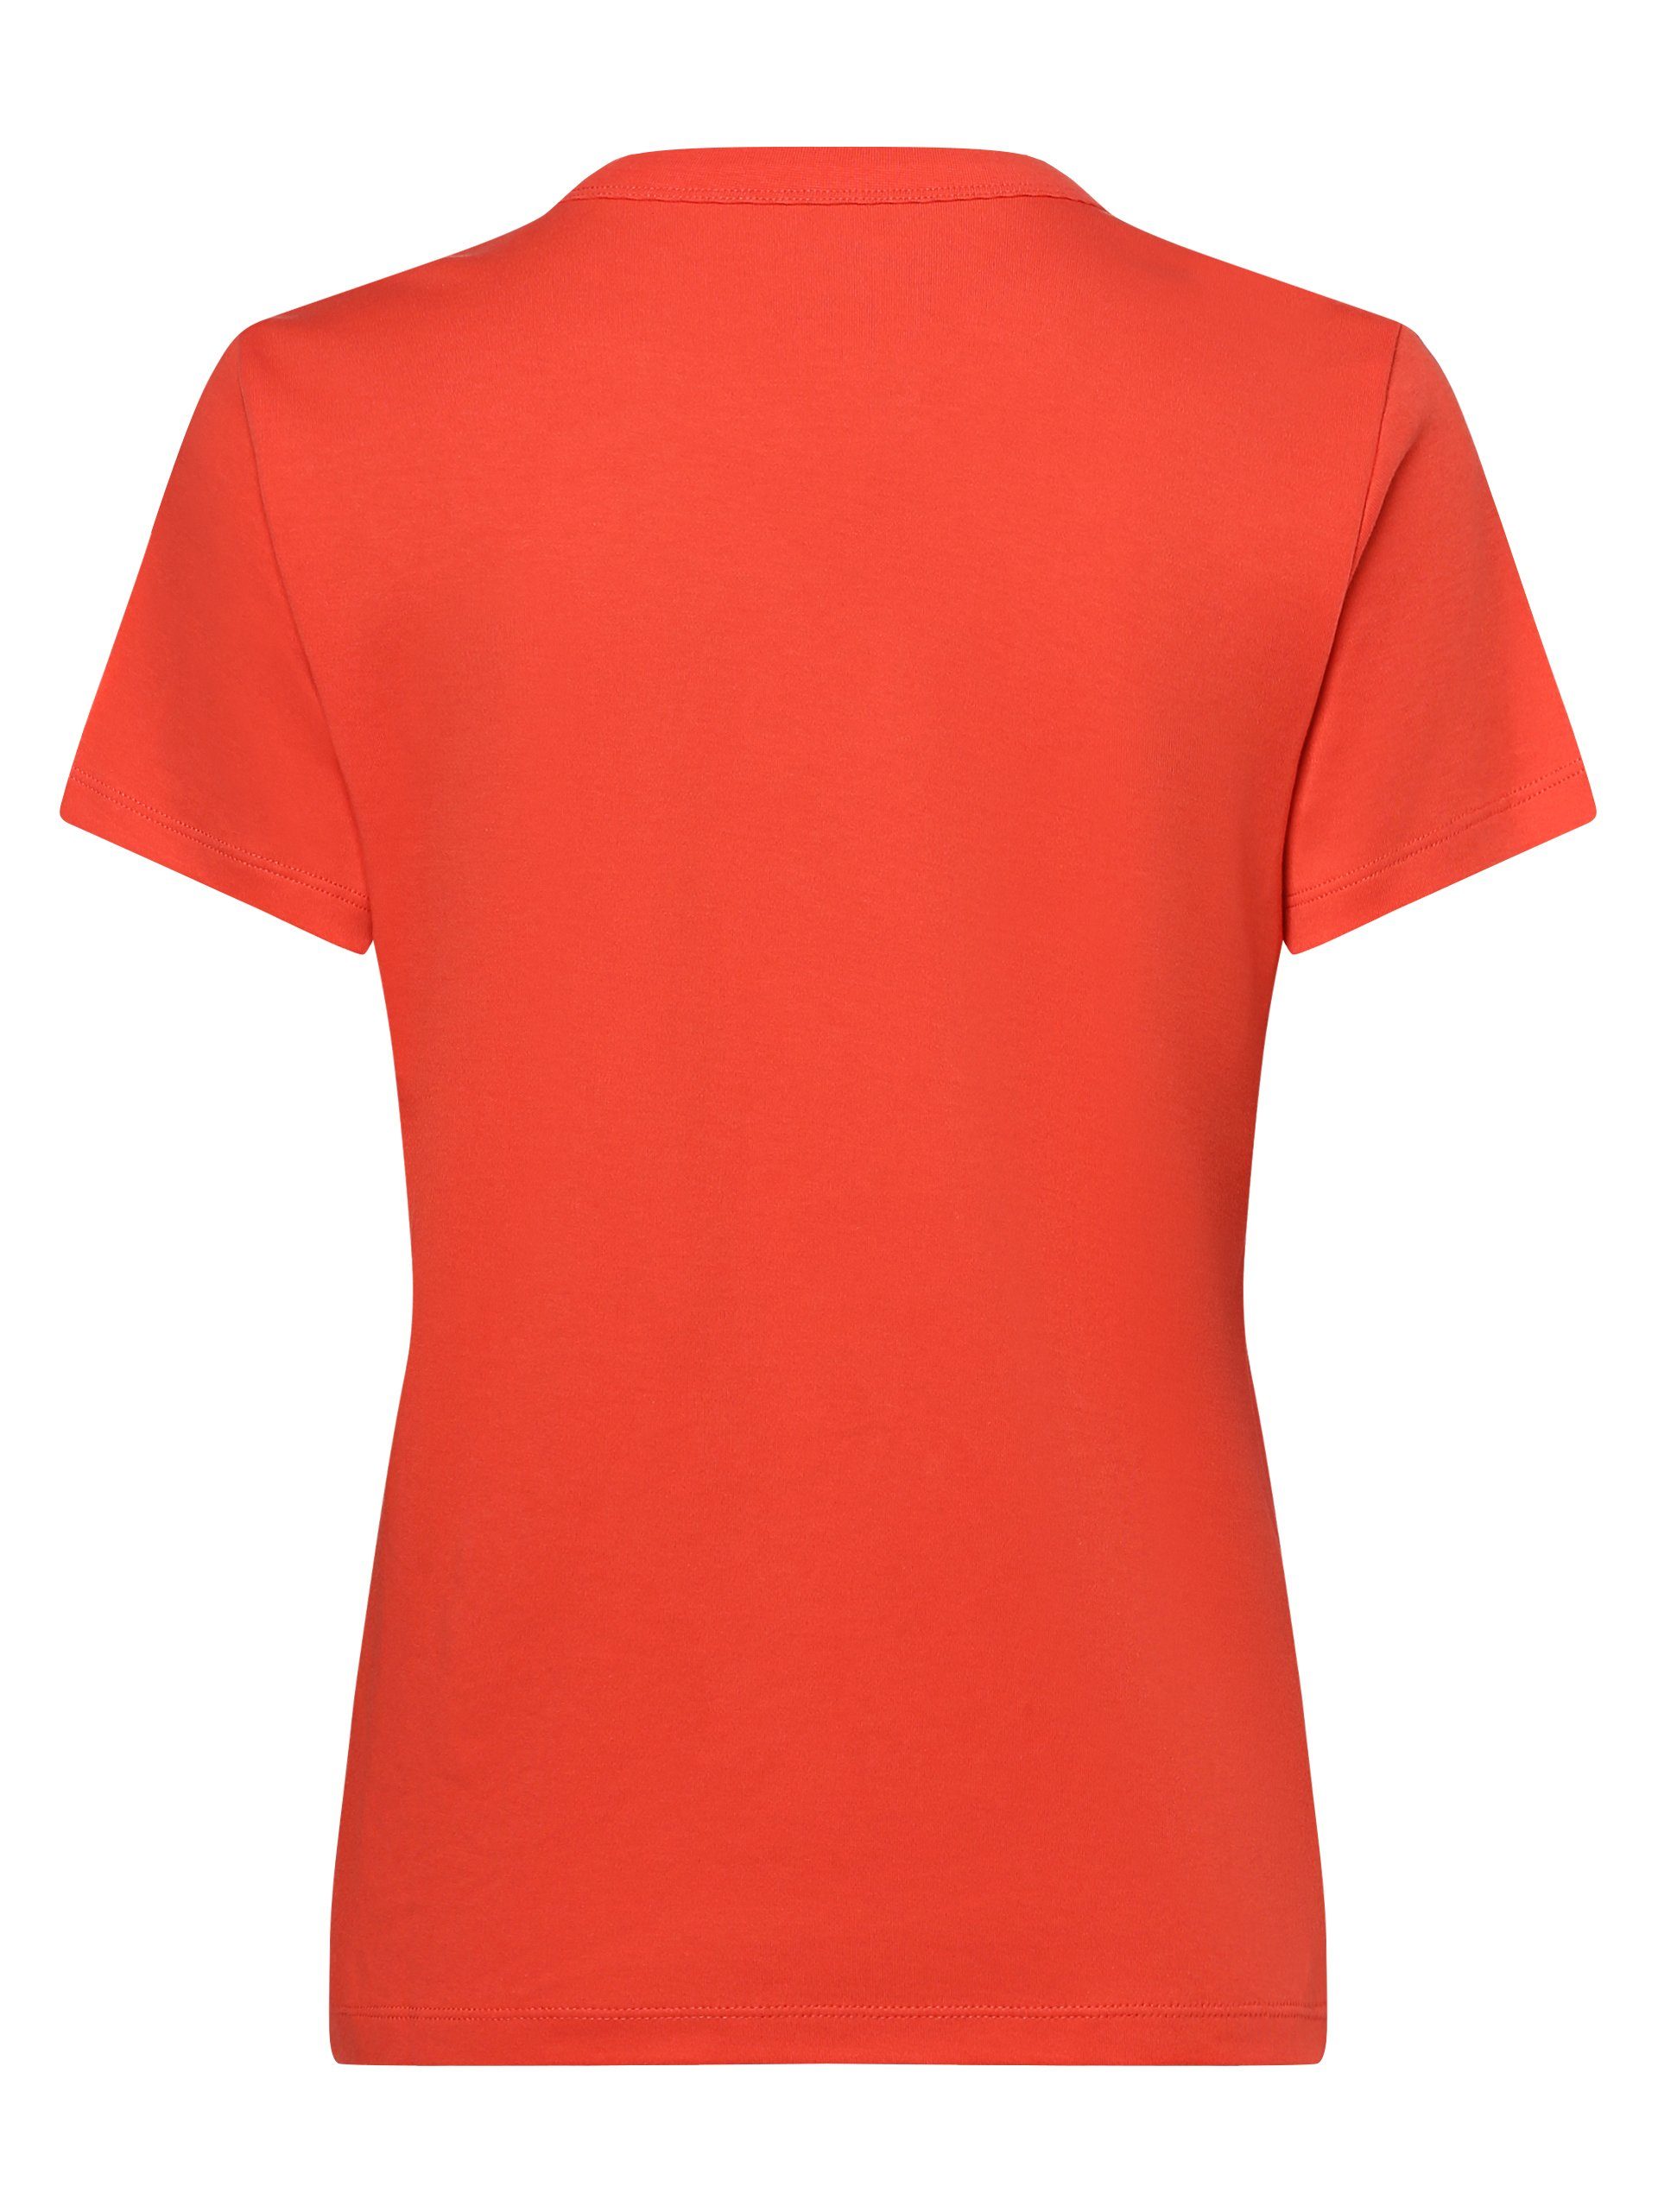 Marie Lund T-Shirt koralle